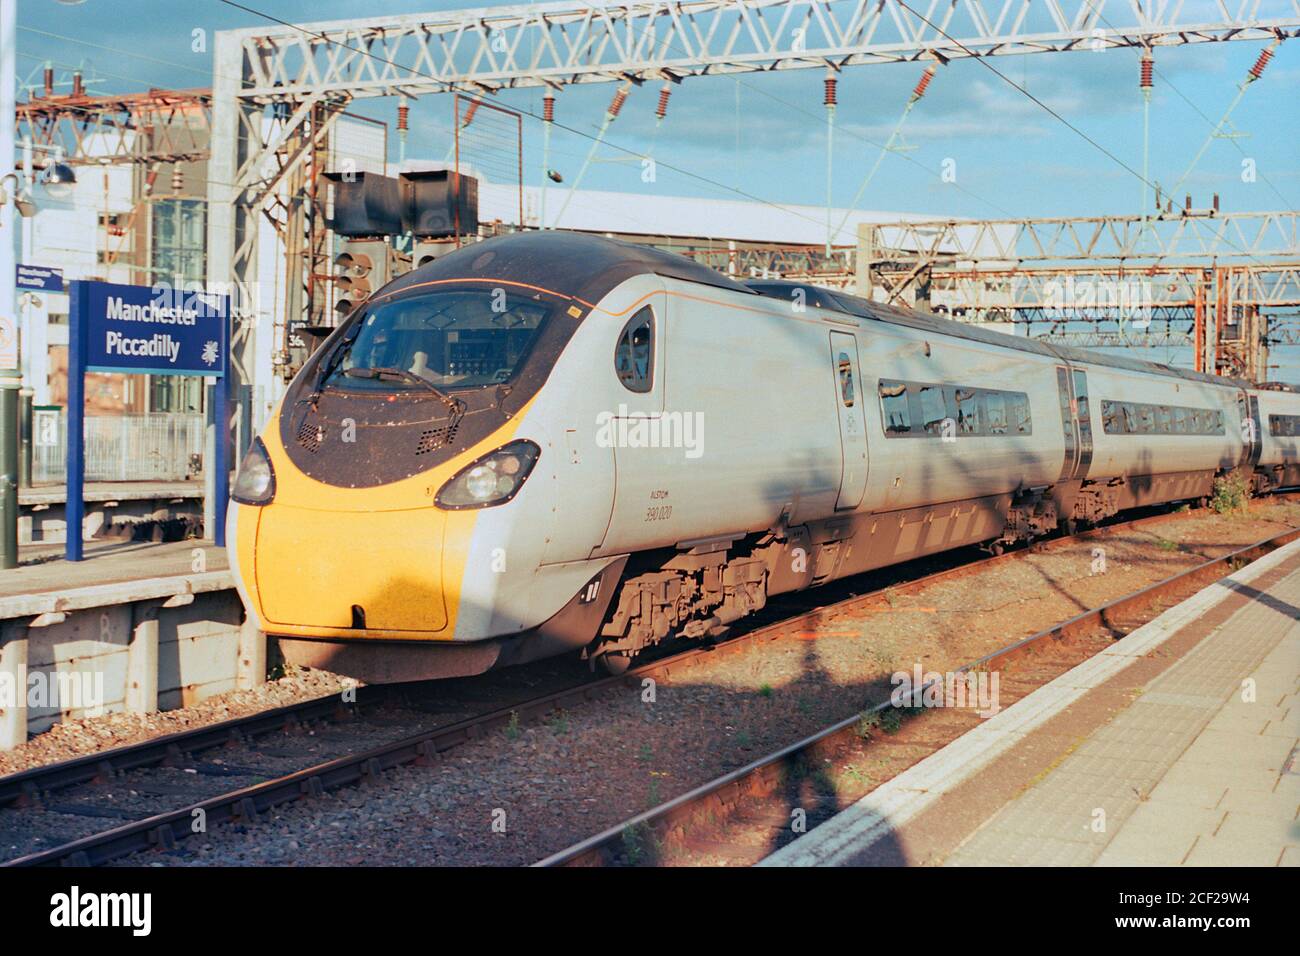 Manchester, Großbritannien - 1. September 2020: Ein elektrischer Hochgeschwindigkeitszug (Klasse 390), der von Avanti West Coast am Bahnhof Manchester Piccadilly fährt. Stockfoto